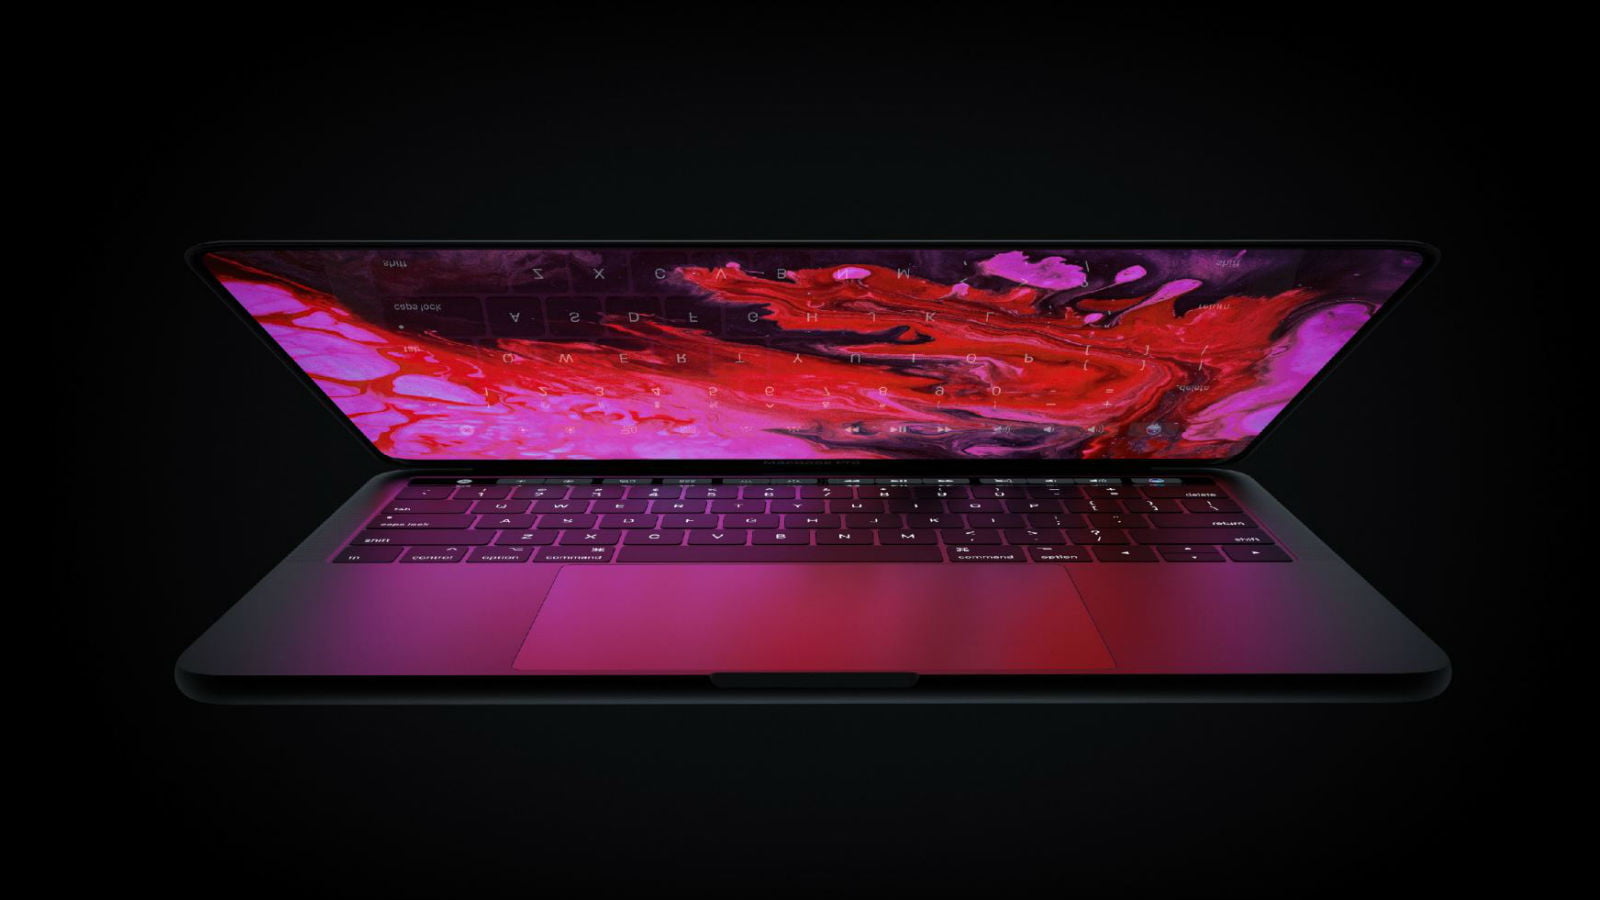 Quên tăng độ sáng màn hình, Apple tưởng MacBook Pro của người dùng bị hỏng và bỏ ra hơn 10.000 USD để bảo hành